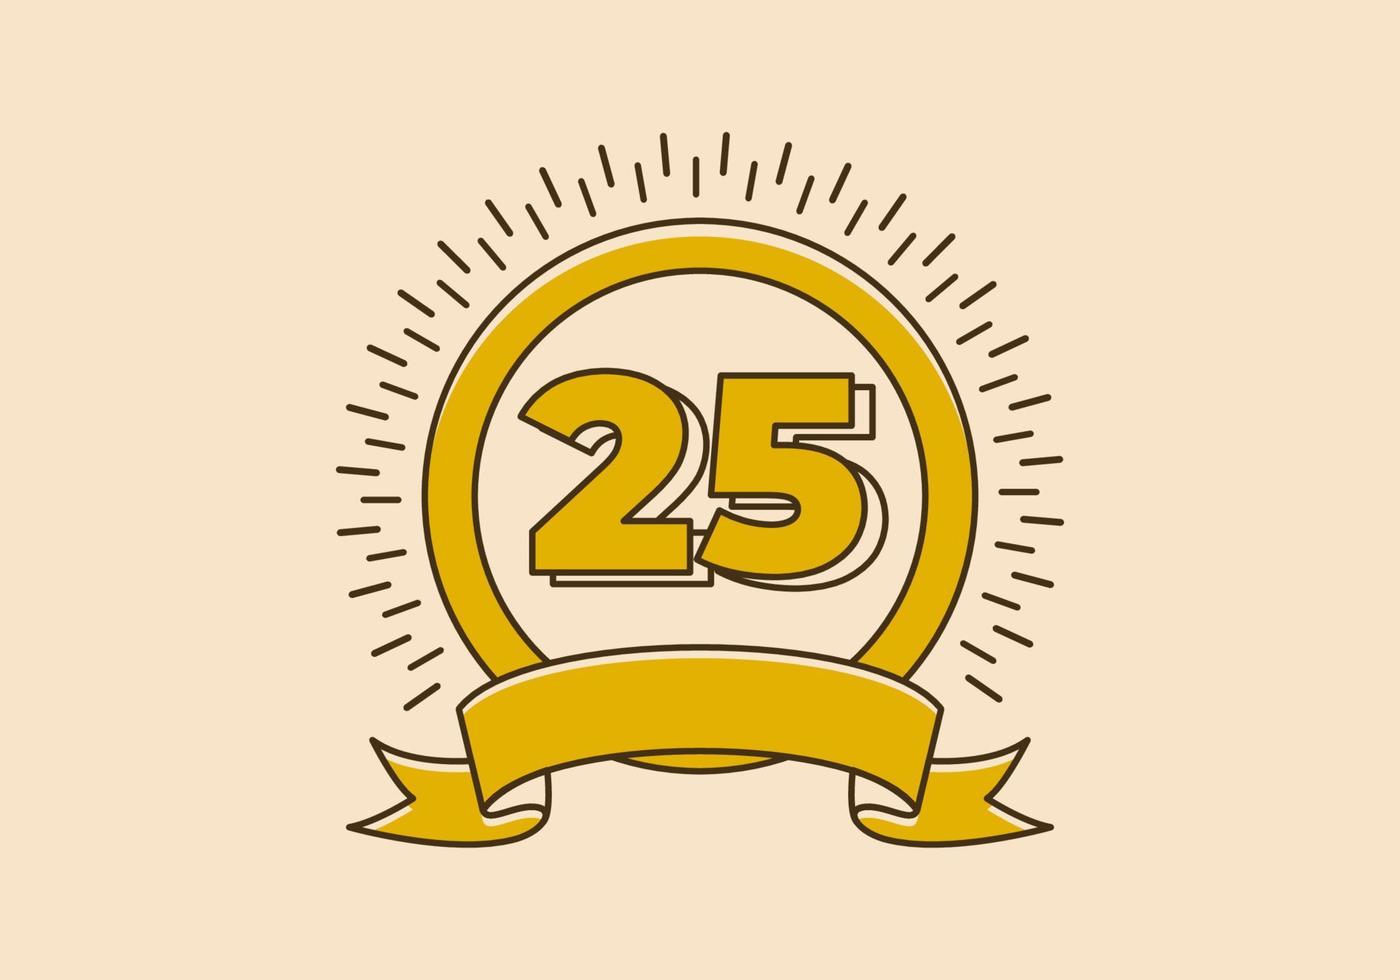 Vintage gelbes Kreisabzeichen mit der Nummer 25 darauf vektor